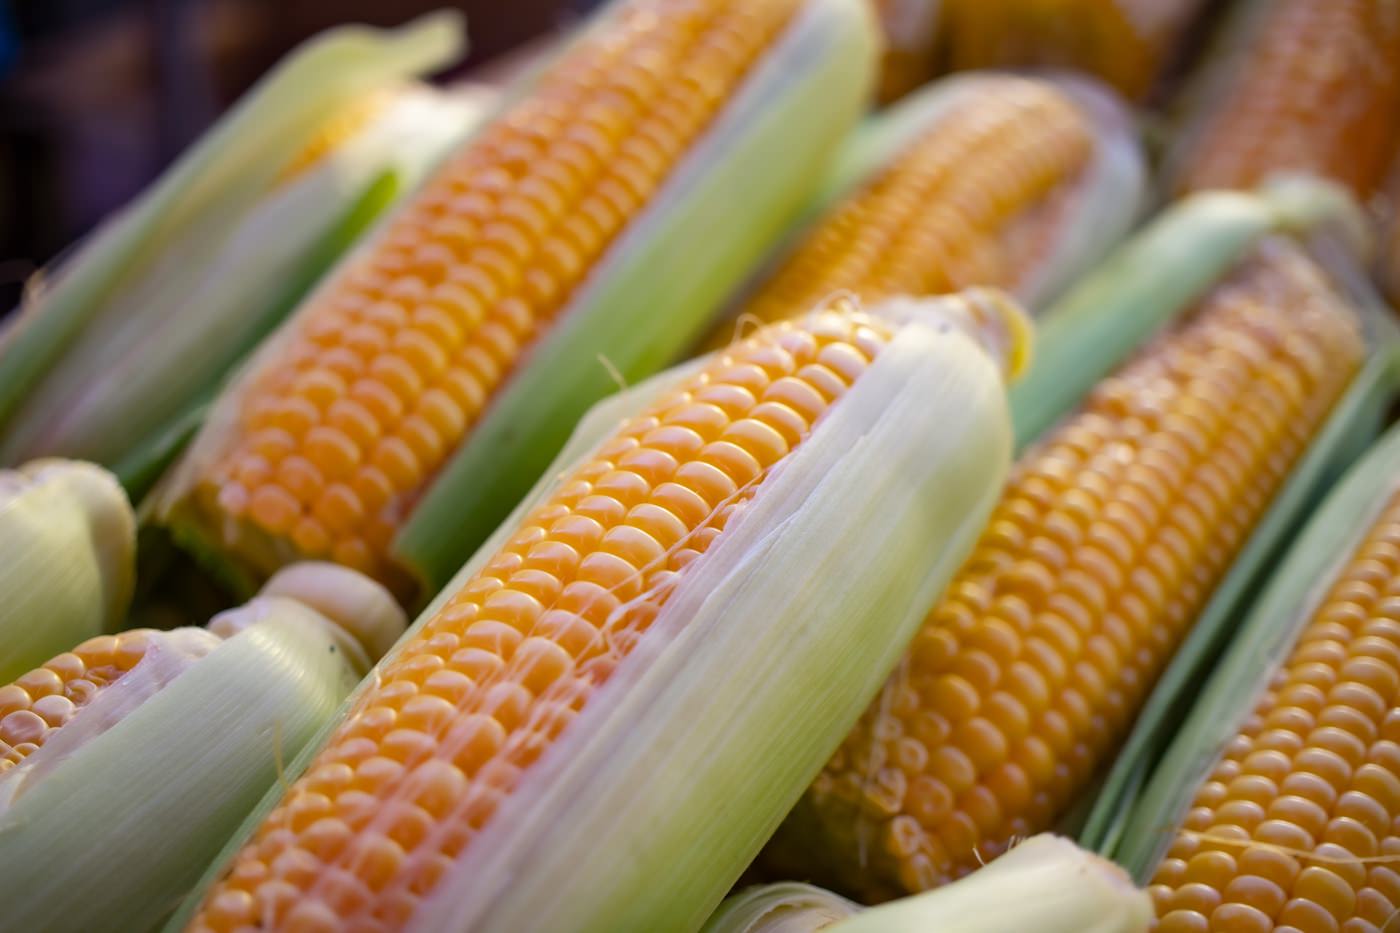 A-maizing Corn